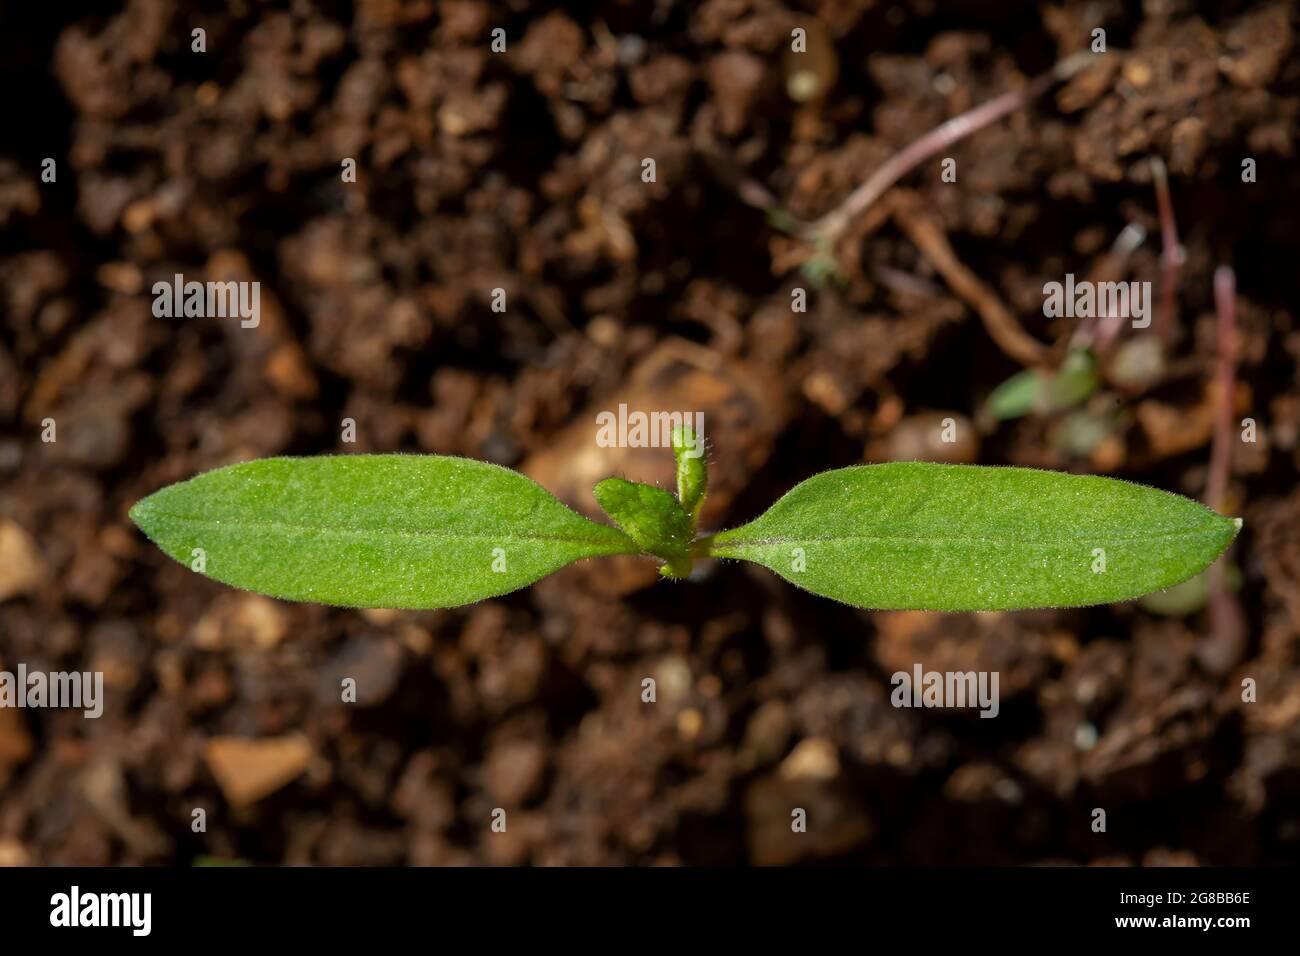 Jeune plante de tomate (Solanum lycopersicum) poussant dans le sol Banque D'Images